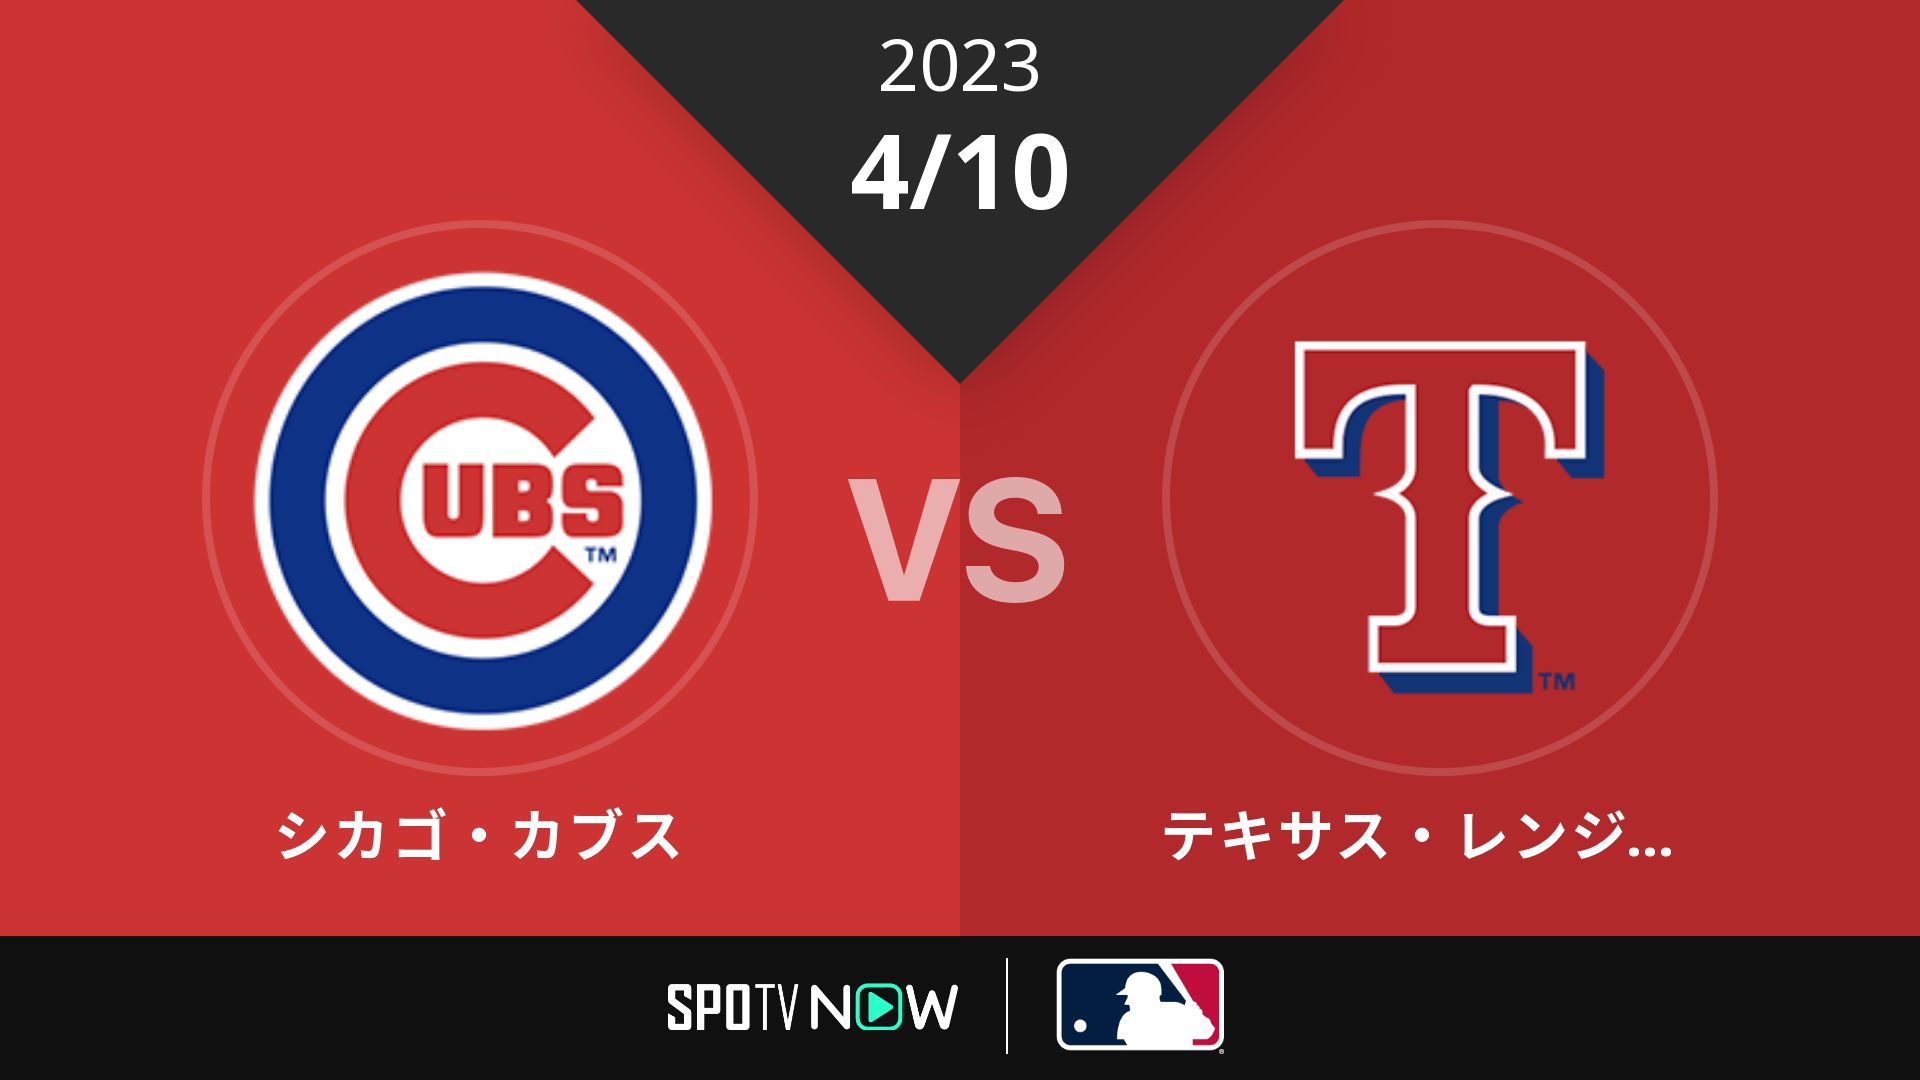 2023/4/10 カブス vs レンジャーズ [MLB]